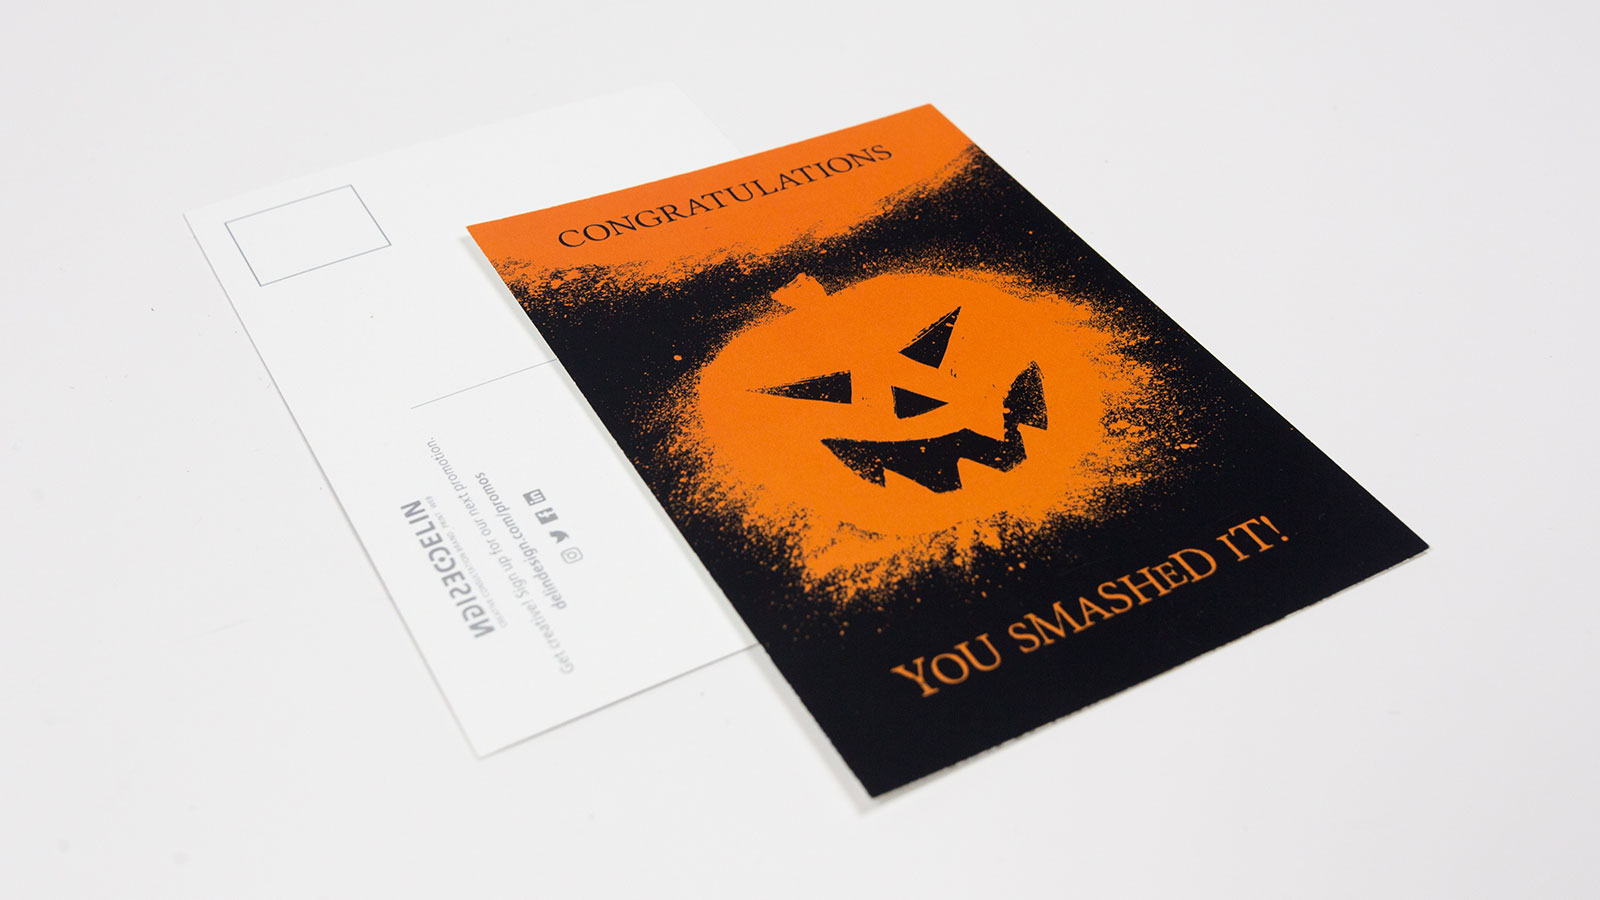 Delin Design Halloween 2017 Goodie Bag Promotion – "You Smashed It" Postcard Design